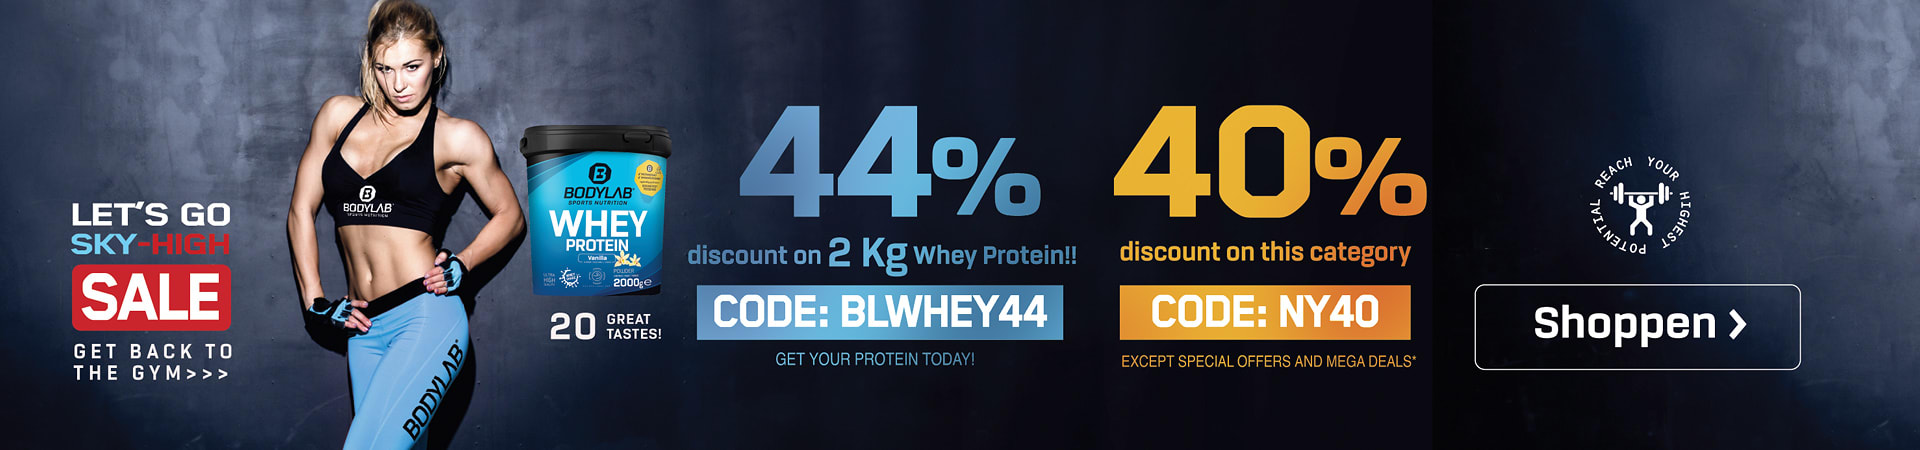 blaues Banner mit Athletin und dem Verweis auf die beiden Angebote mit 44% auf Whey 2kg und bis 40% auf Bodylab Produkte